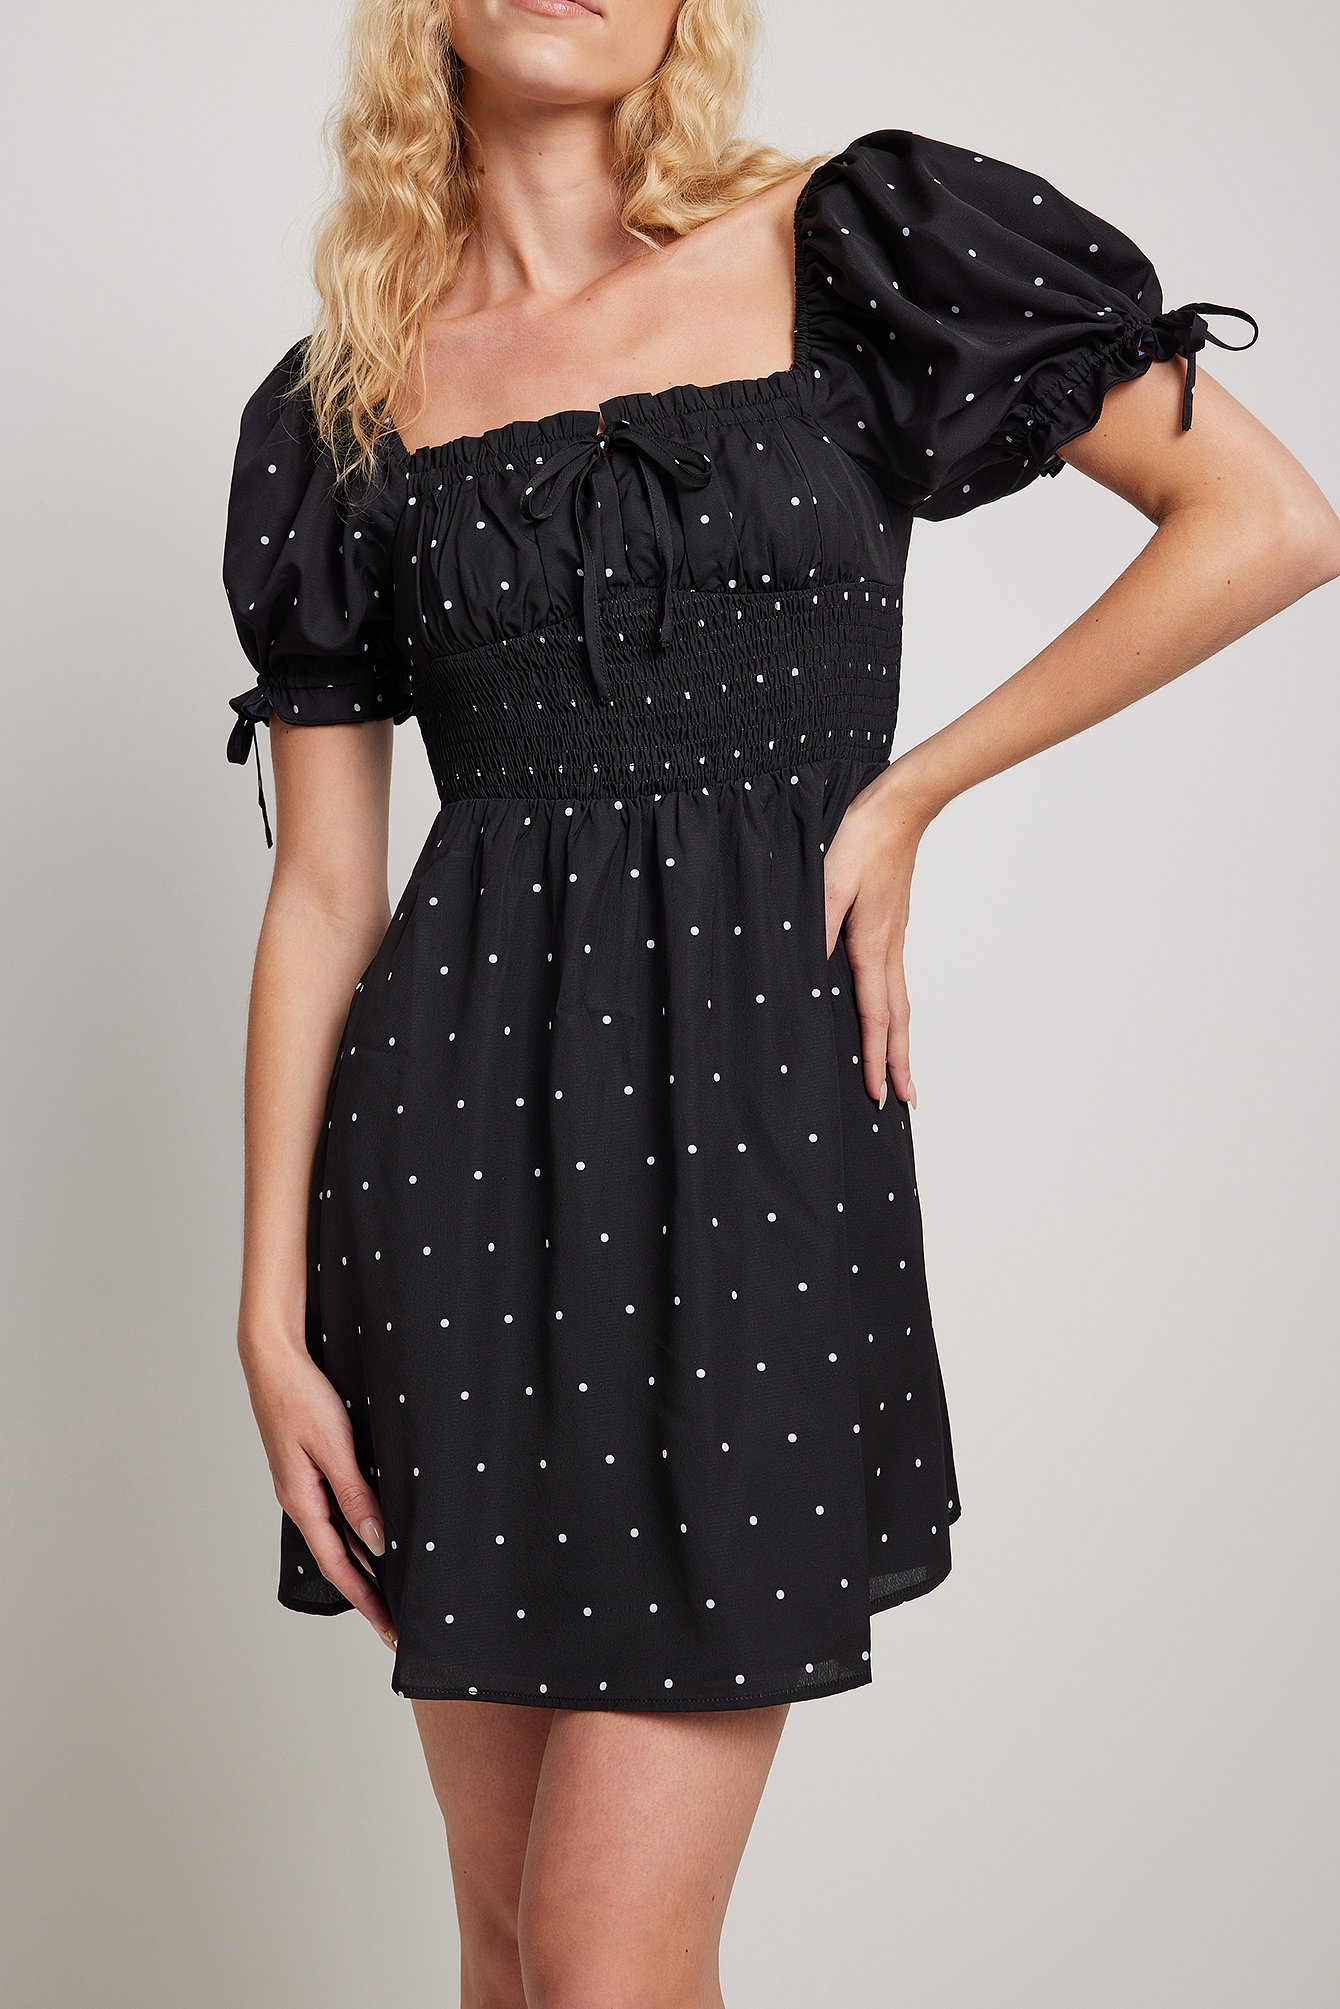 Black Dot Puff Tie Sleeve Mini Dress